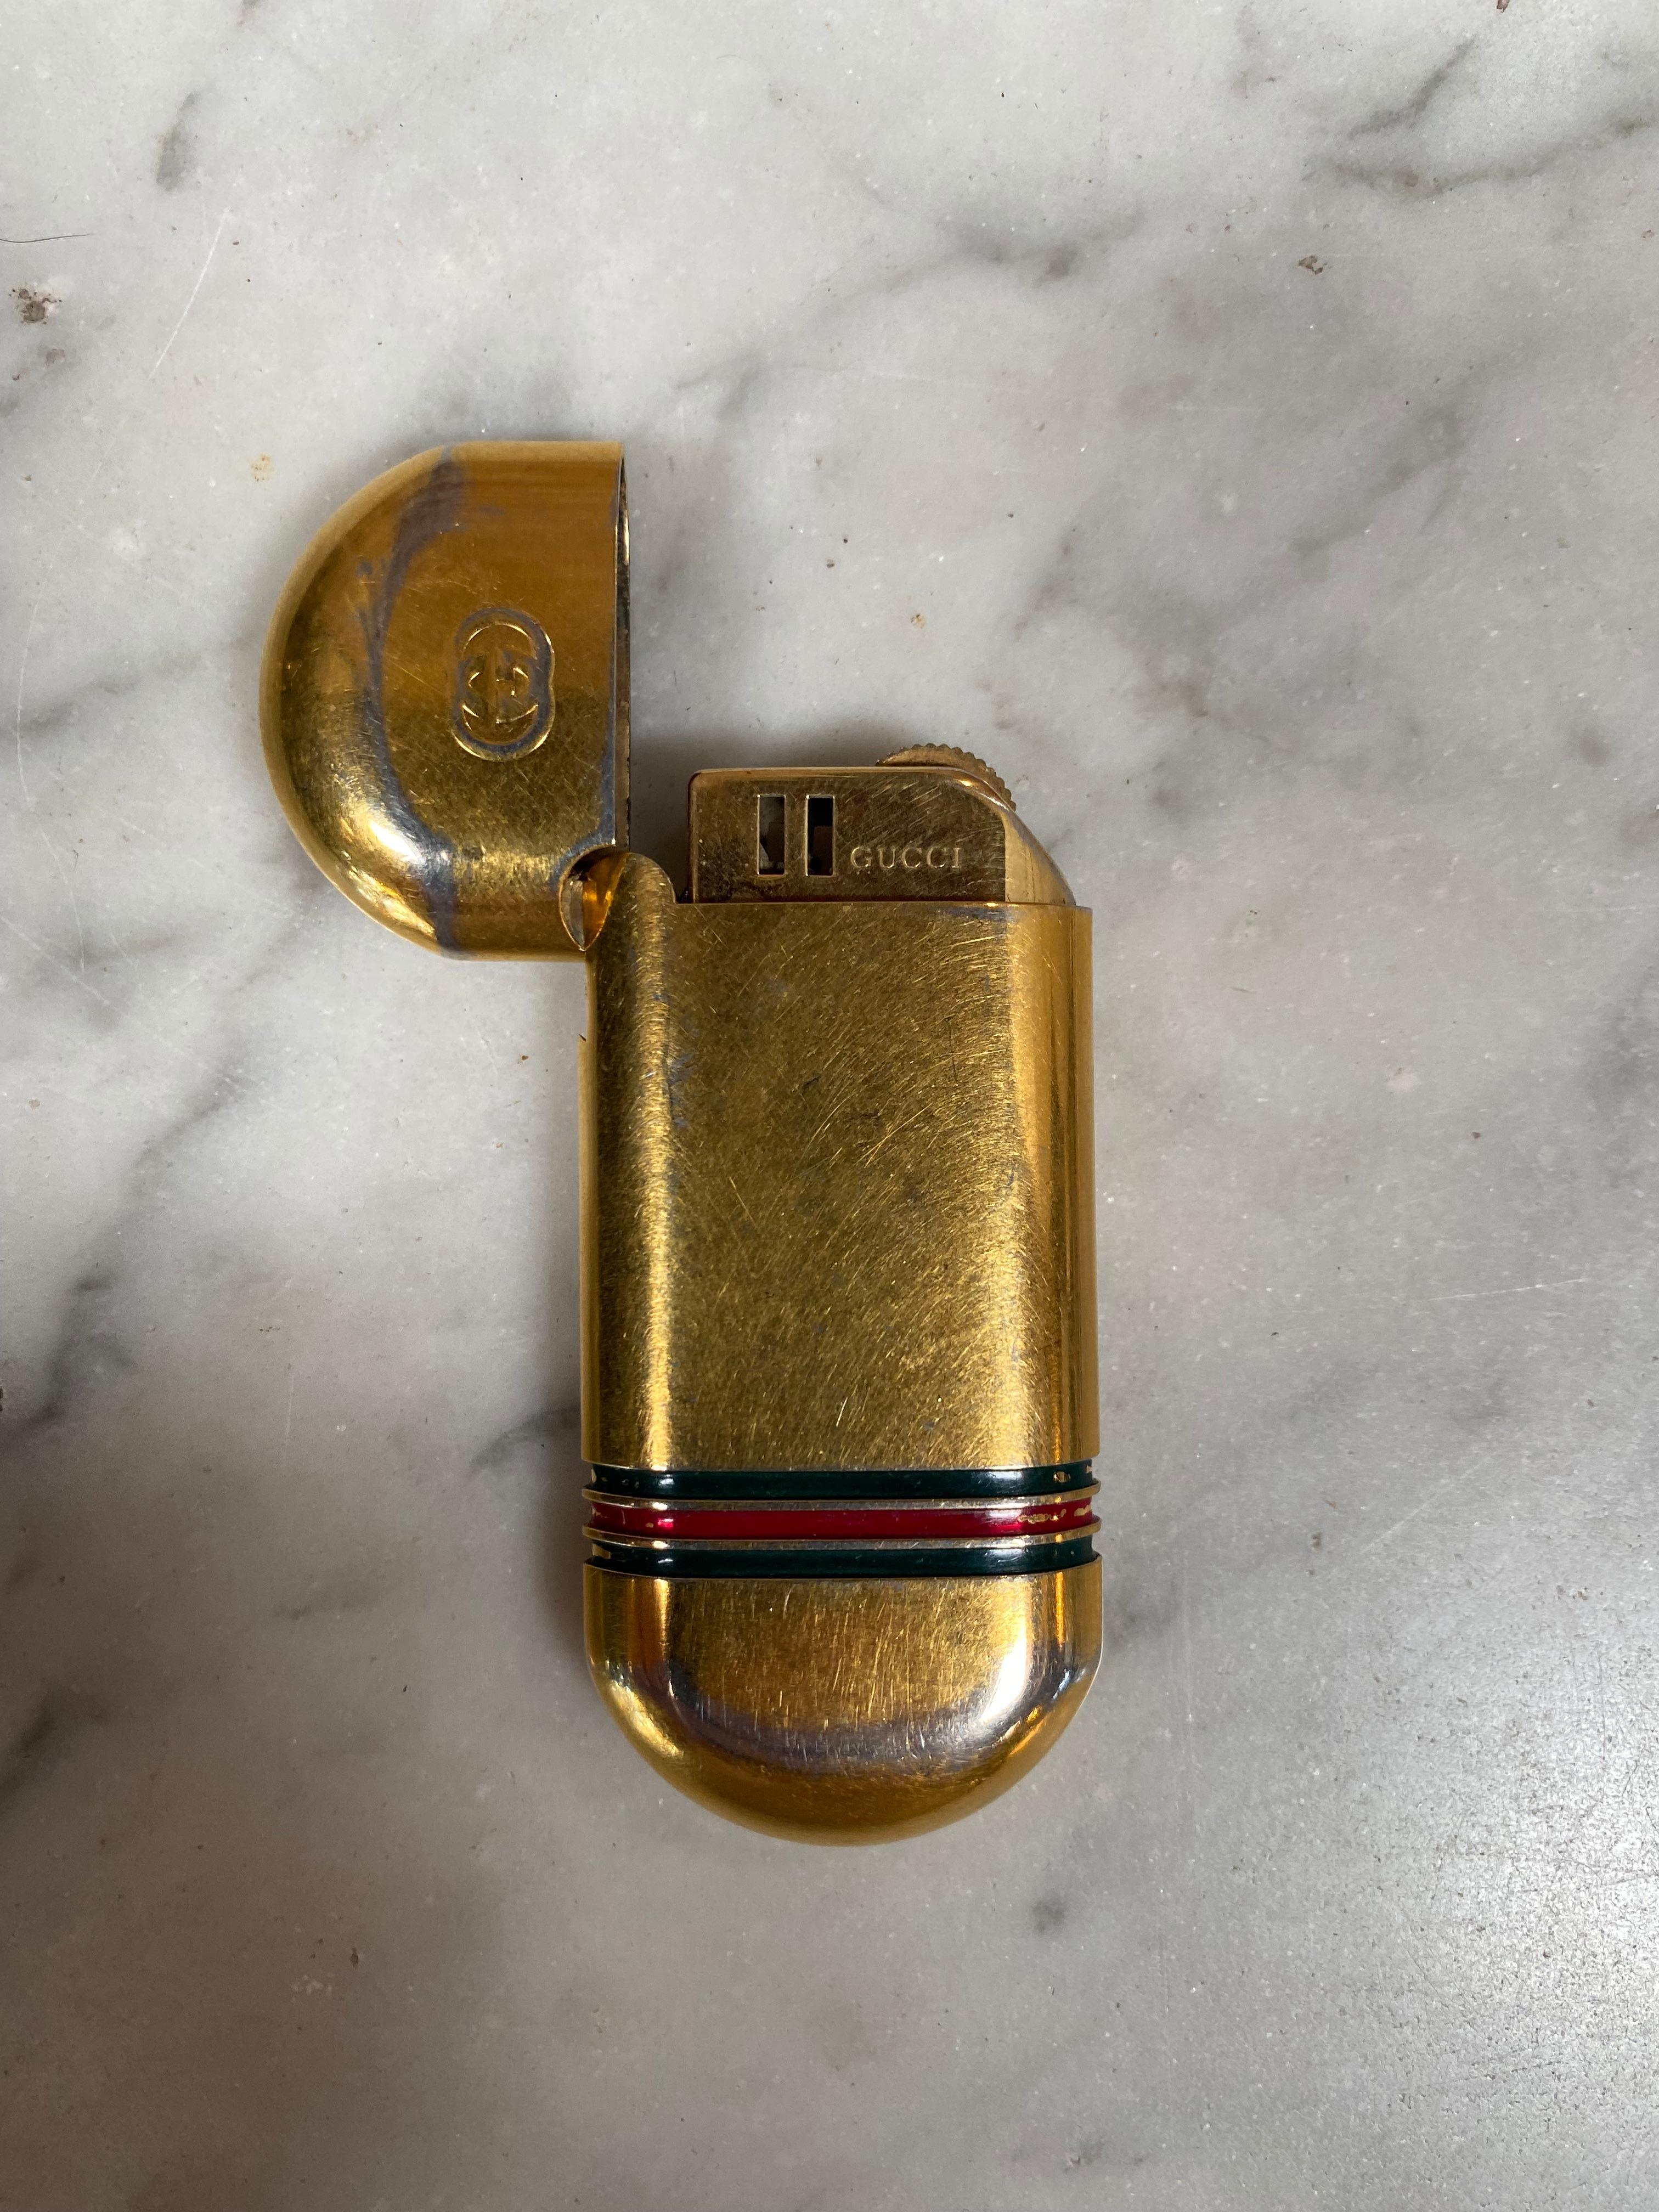 Vintage Gucci gold lighter, 1970s.
 